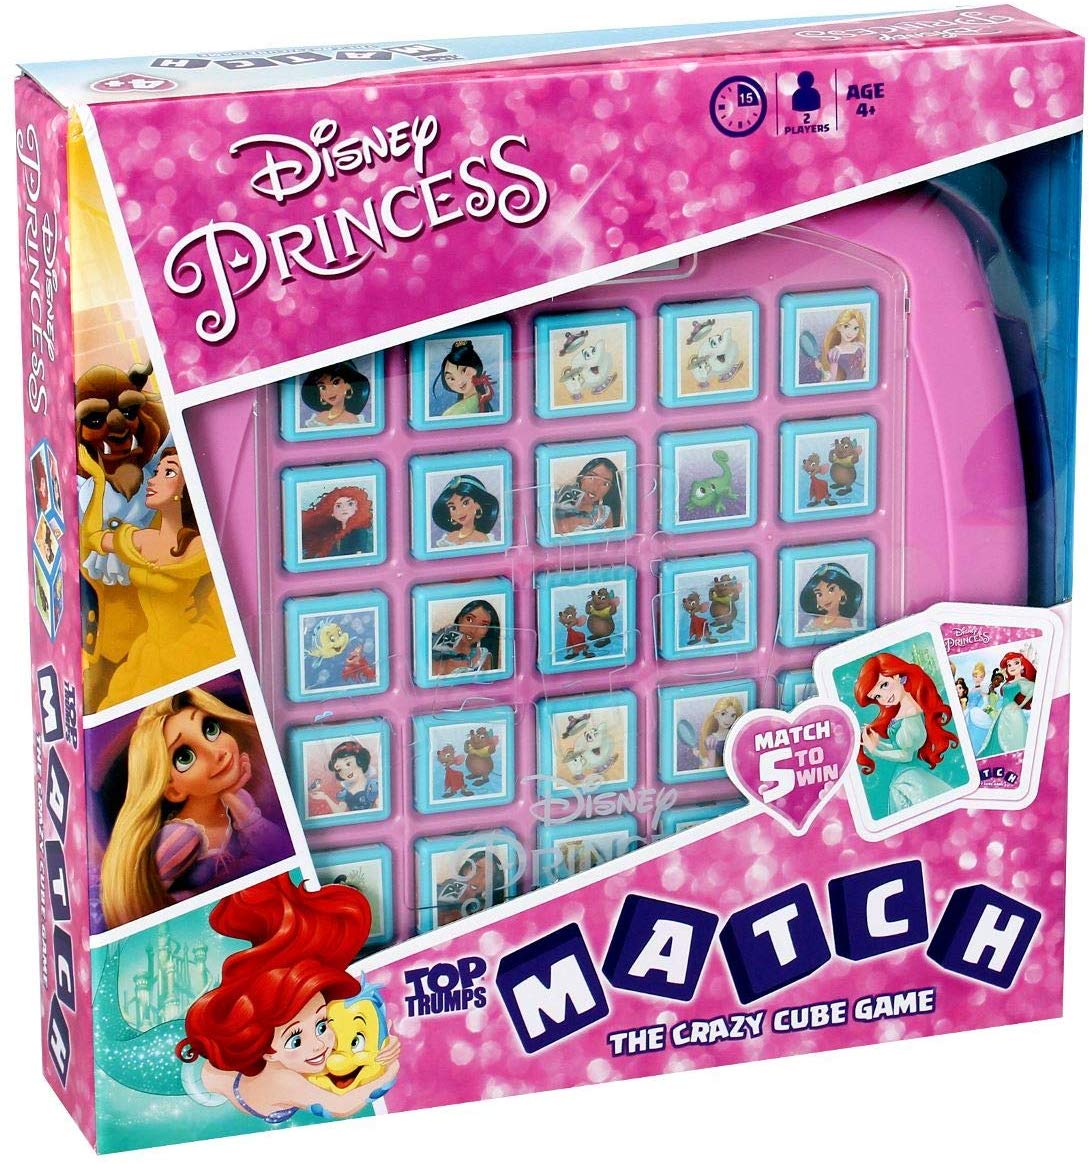 სამაგიდო თამაში თოფ თრამპს. მოარგე დისნეის პრინცესები (Top Trumps Match Disney Princess) სამაგიდო თამაში